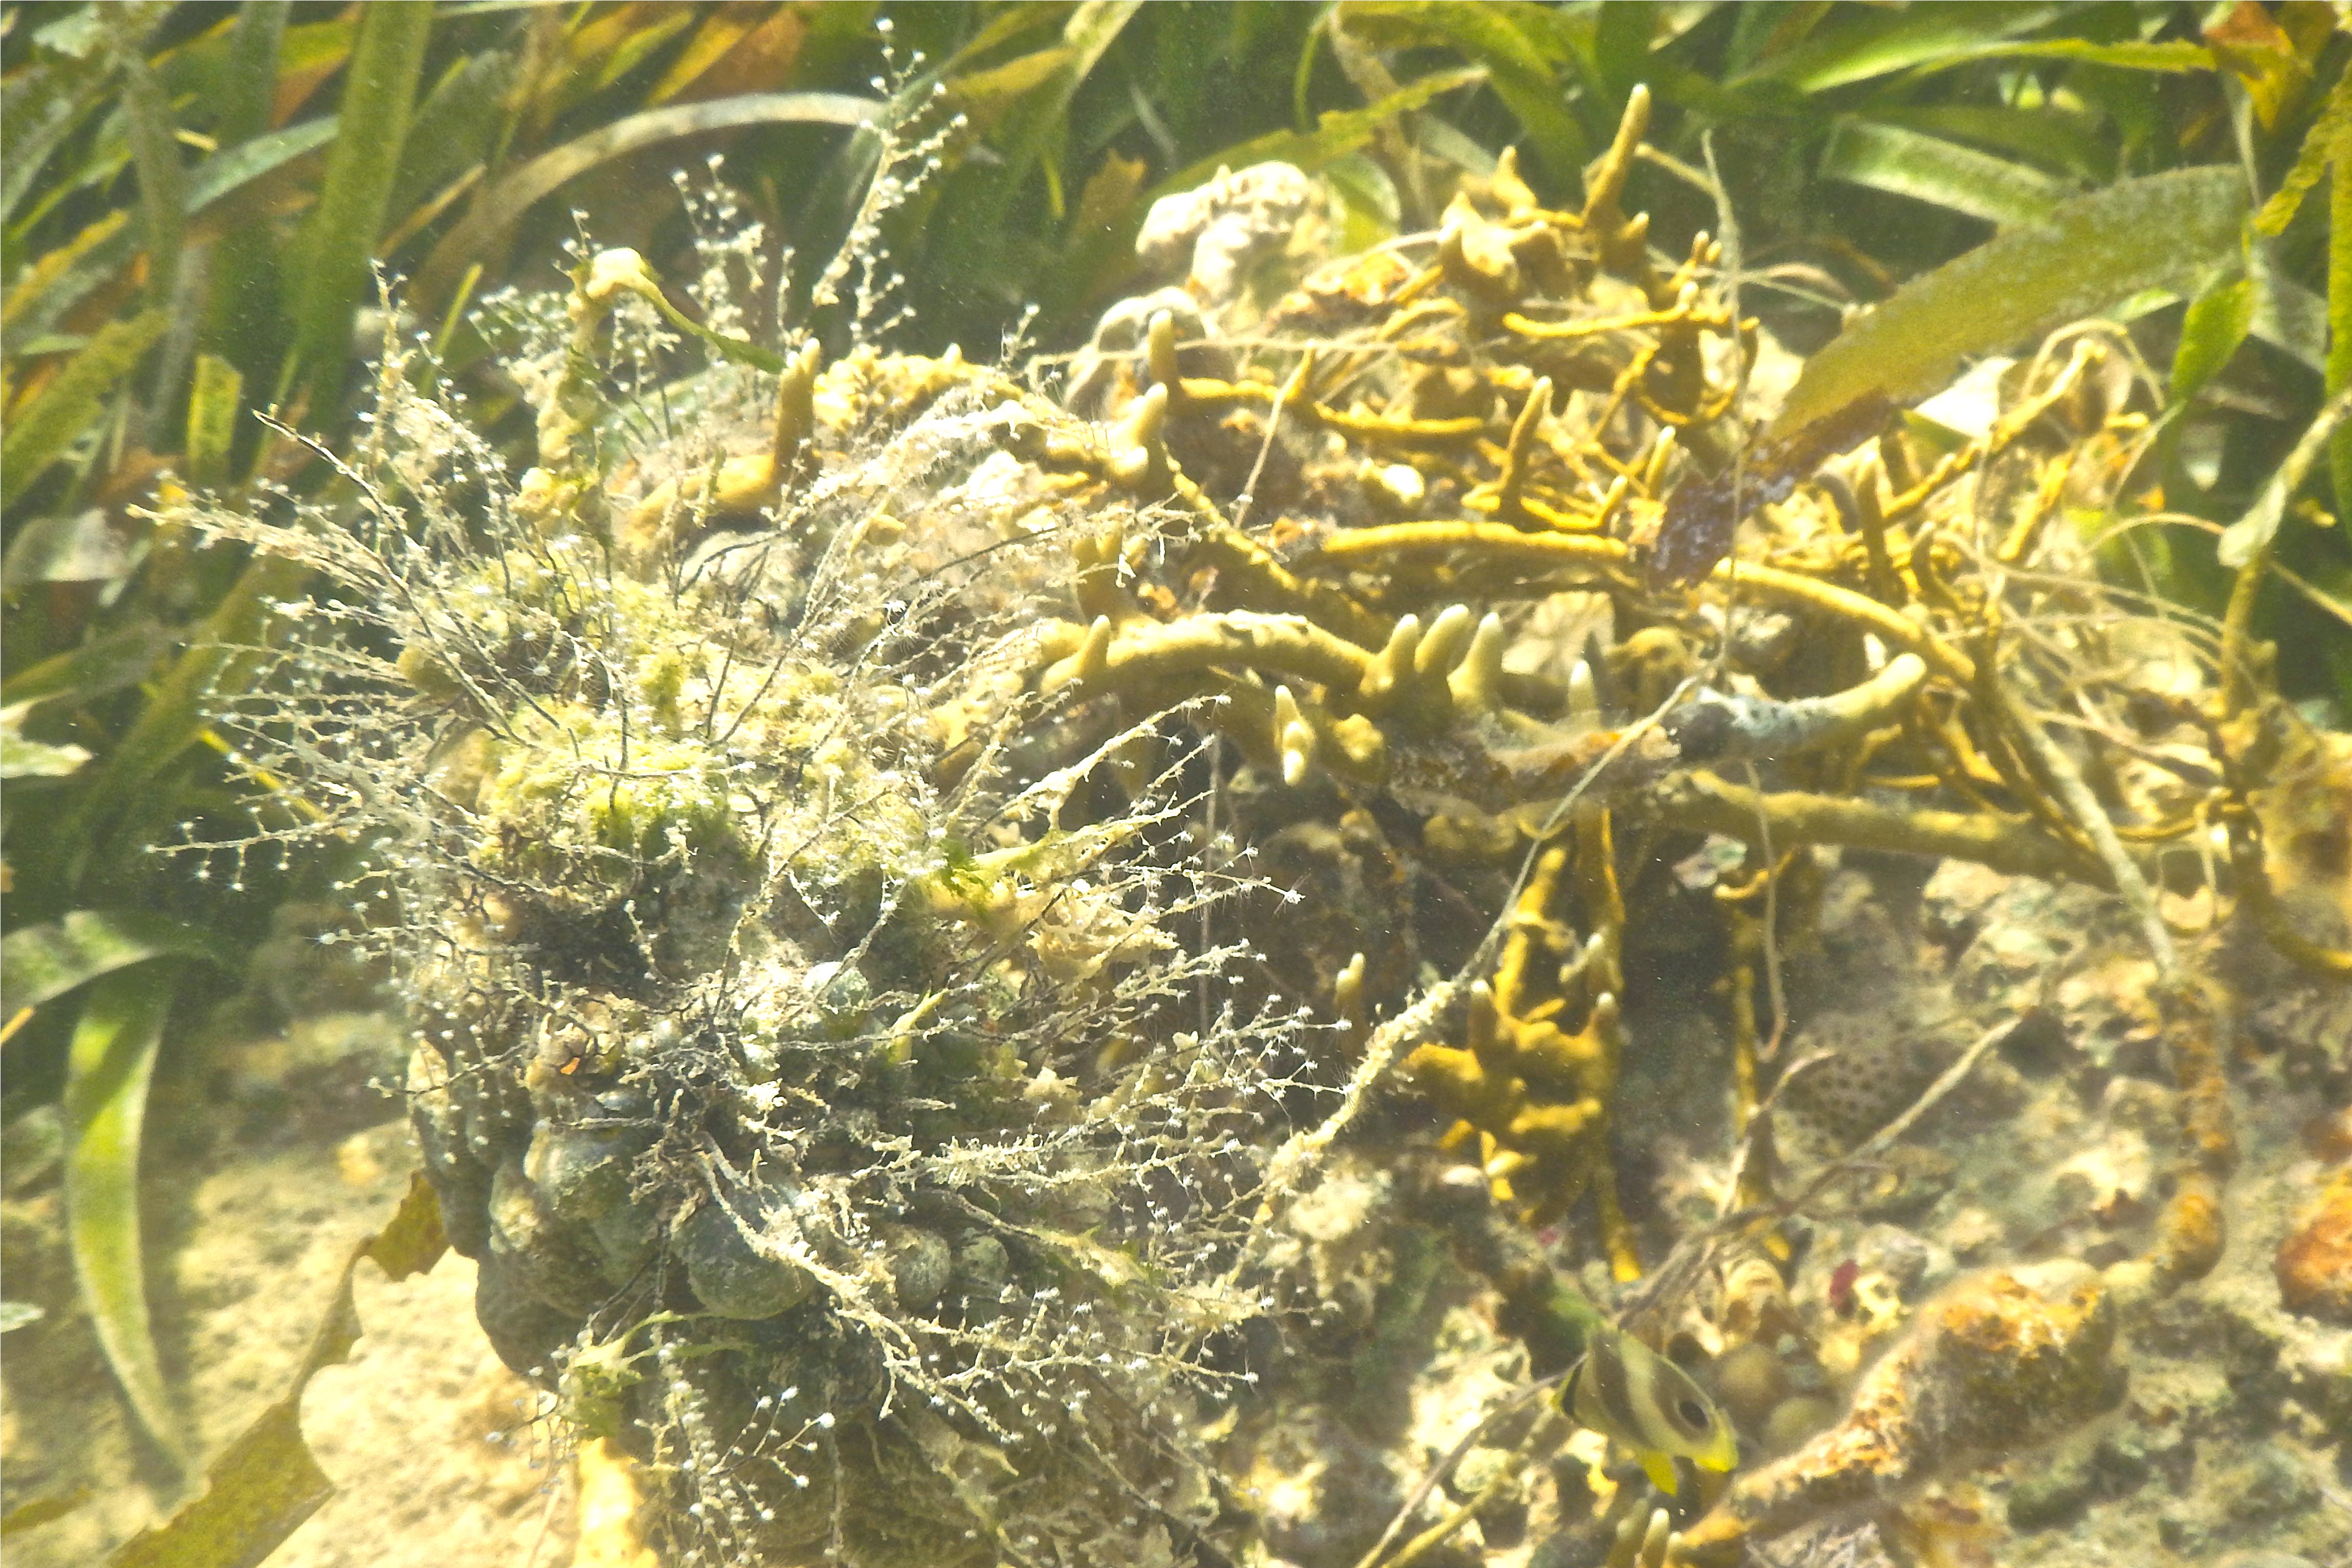 Sertulariidae - Algae Hydroid - Thyroscyphus ramosus